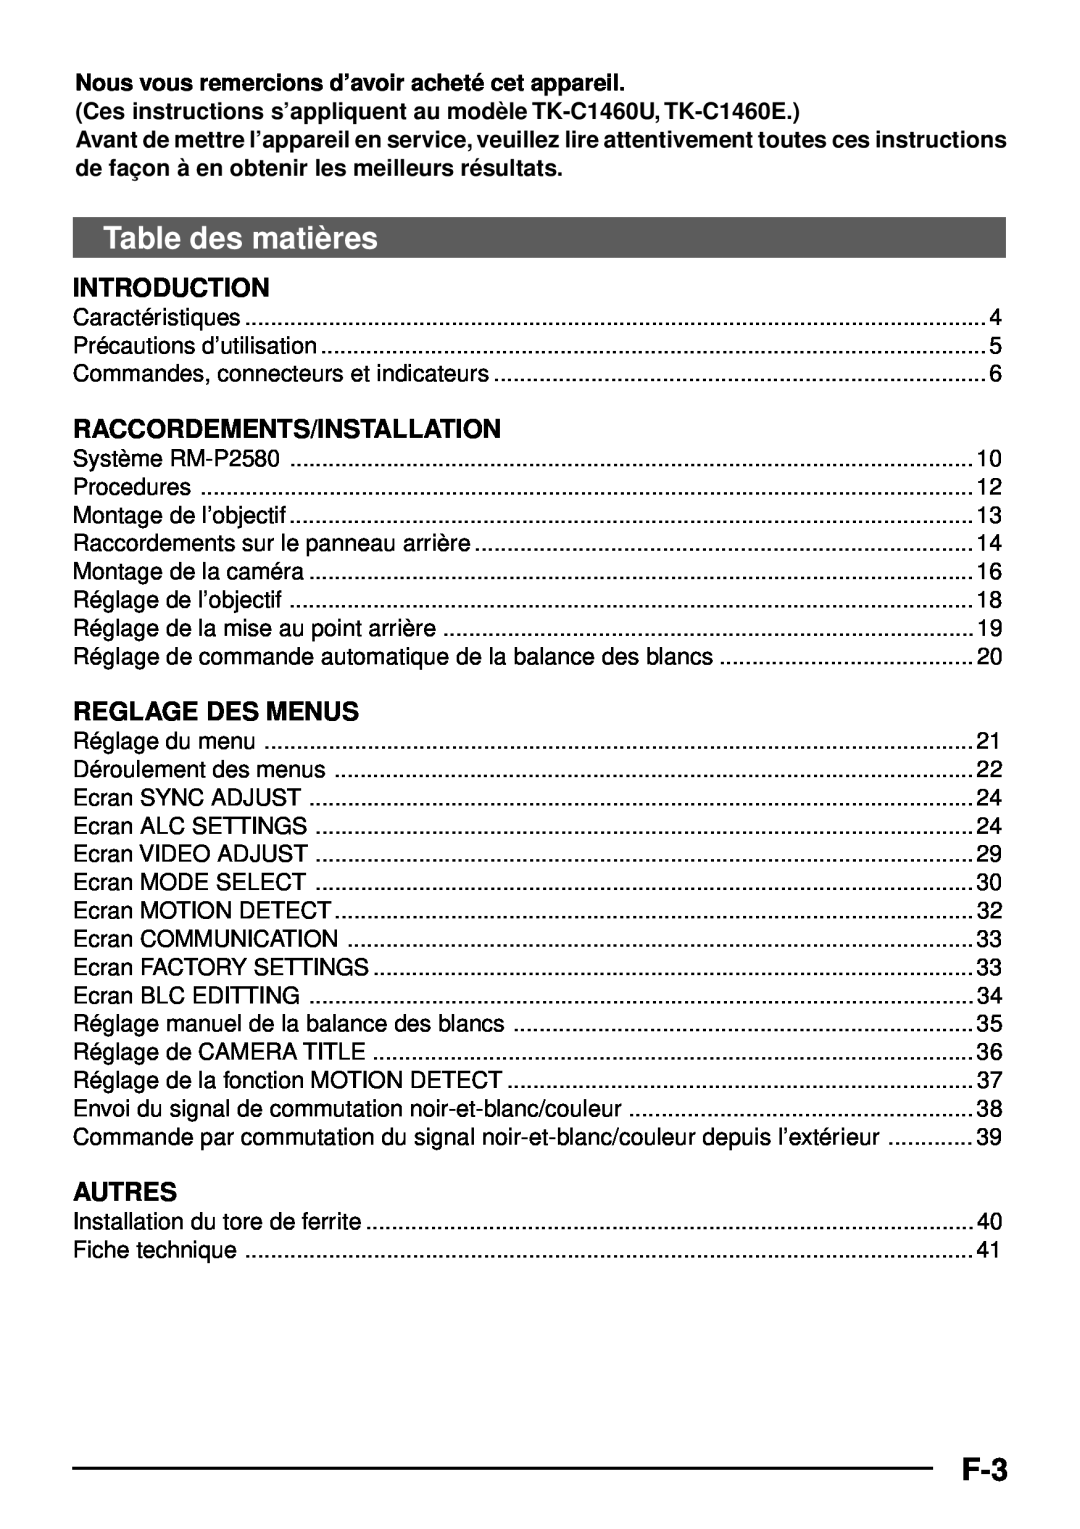 JVC TK-C1460 manual Table des matiè res, Raccordements/Installation, Reglage Des Menus, Autres, Introduction 